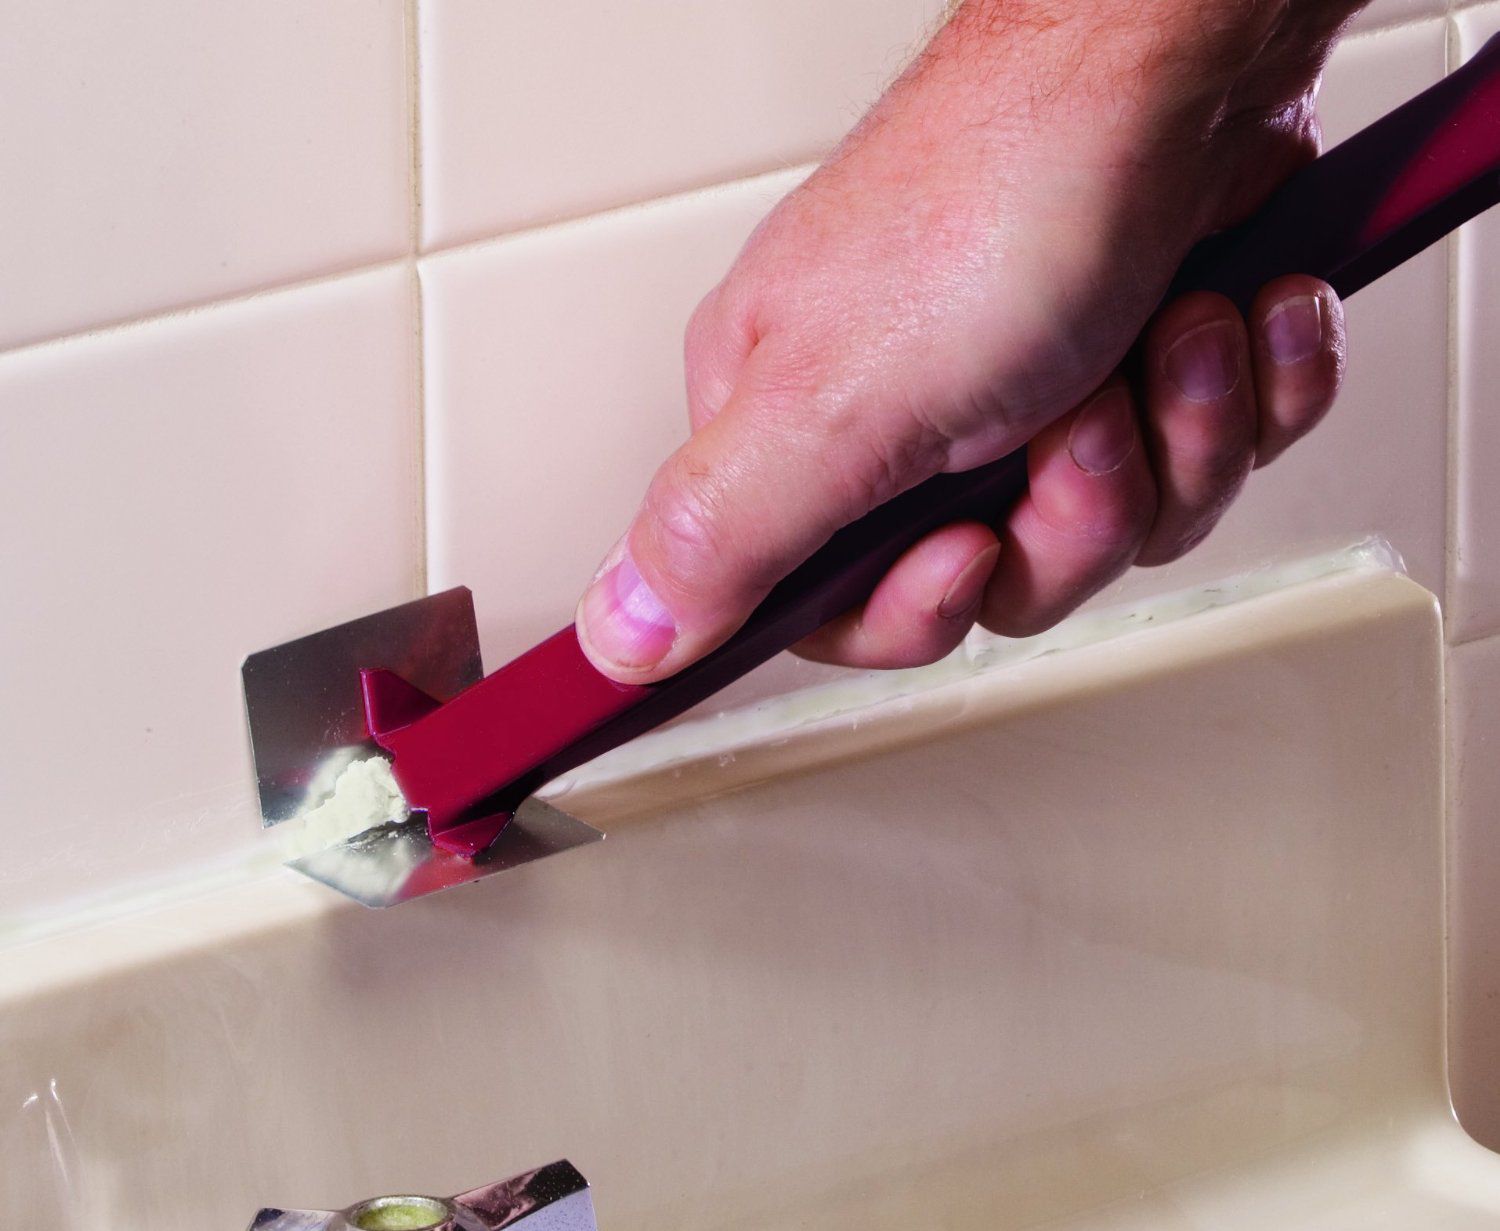 Как убрать силиконовый герметик с акриловой ванны без повреждения ее покрытия различными средствами и методами